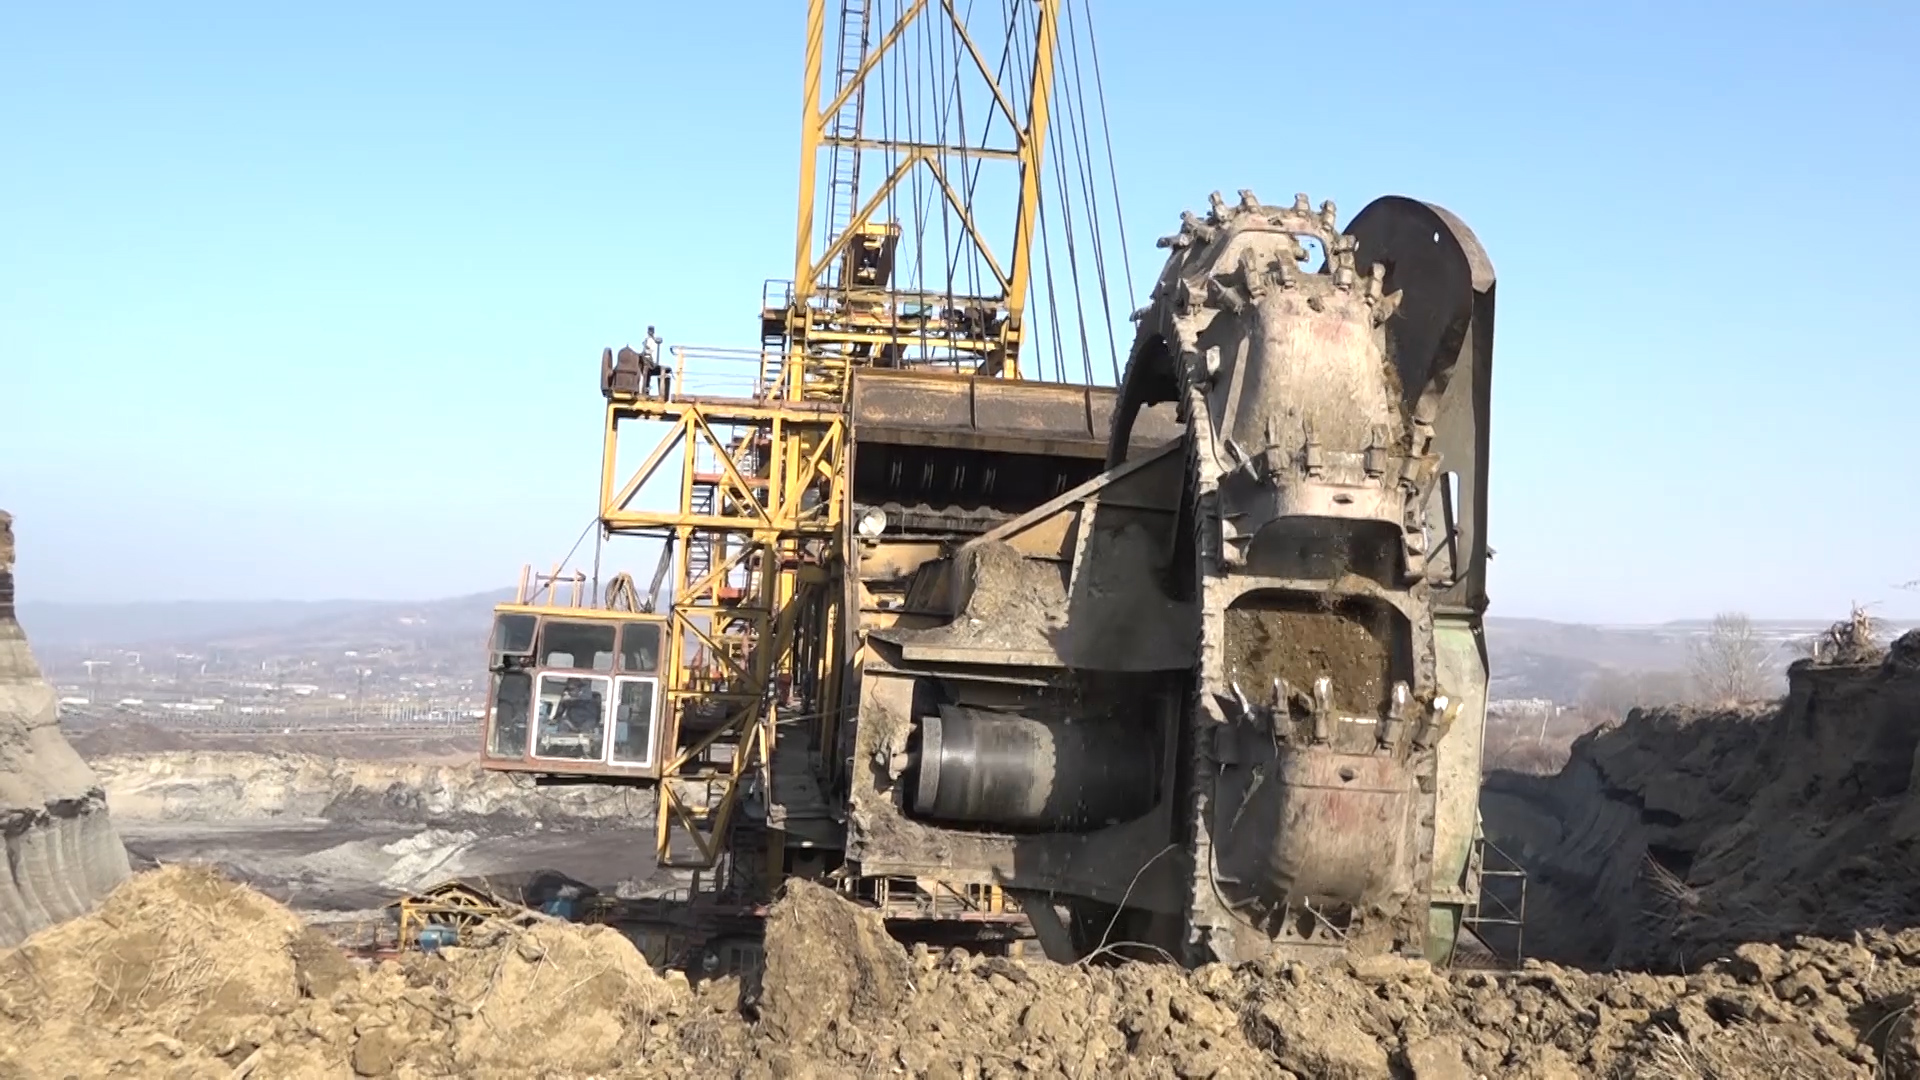 Reparații la excavatoarele de mare capacitate din minerit